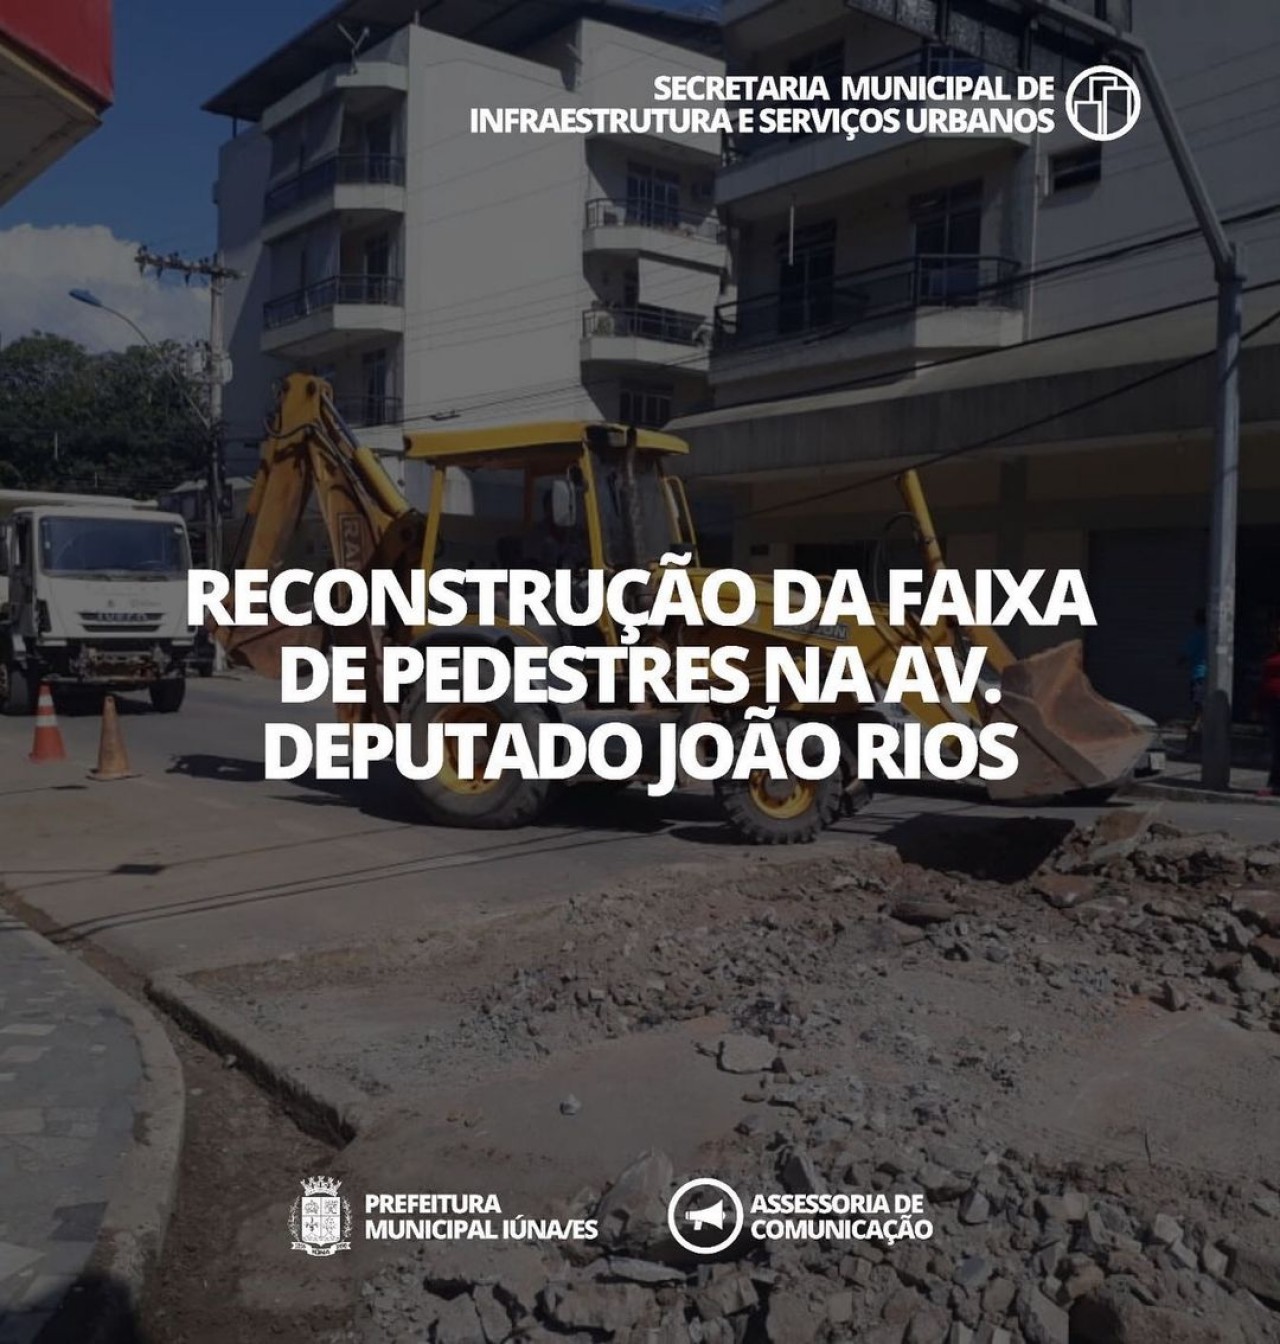 OBRA 13 - Reconstrução da Faixa de Pedestre. Av. Deputado João Rios